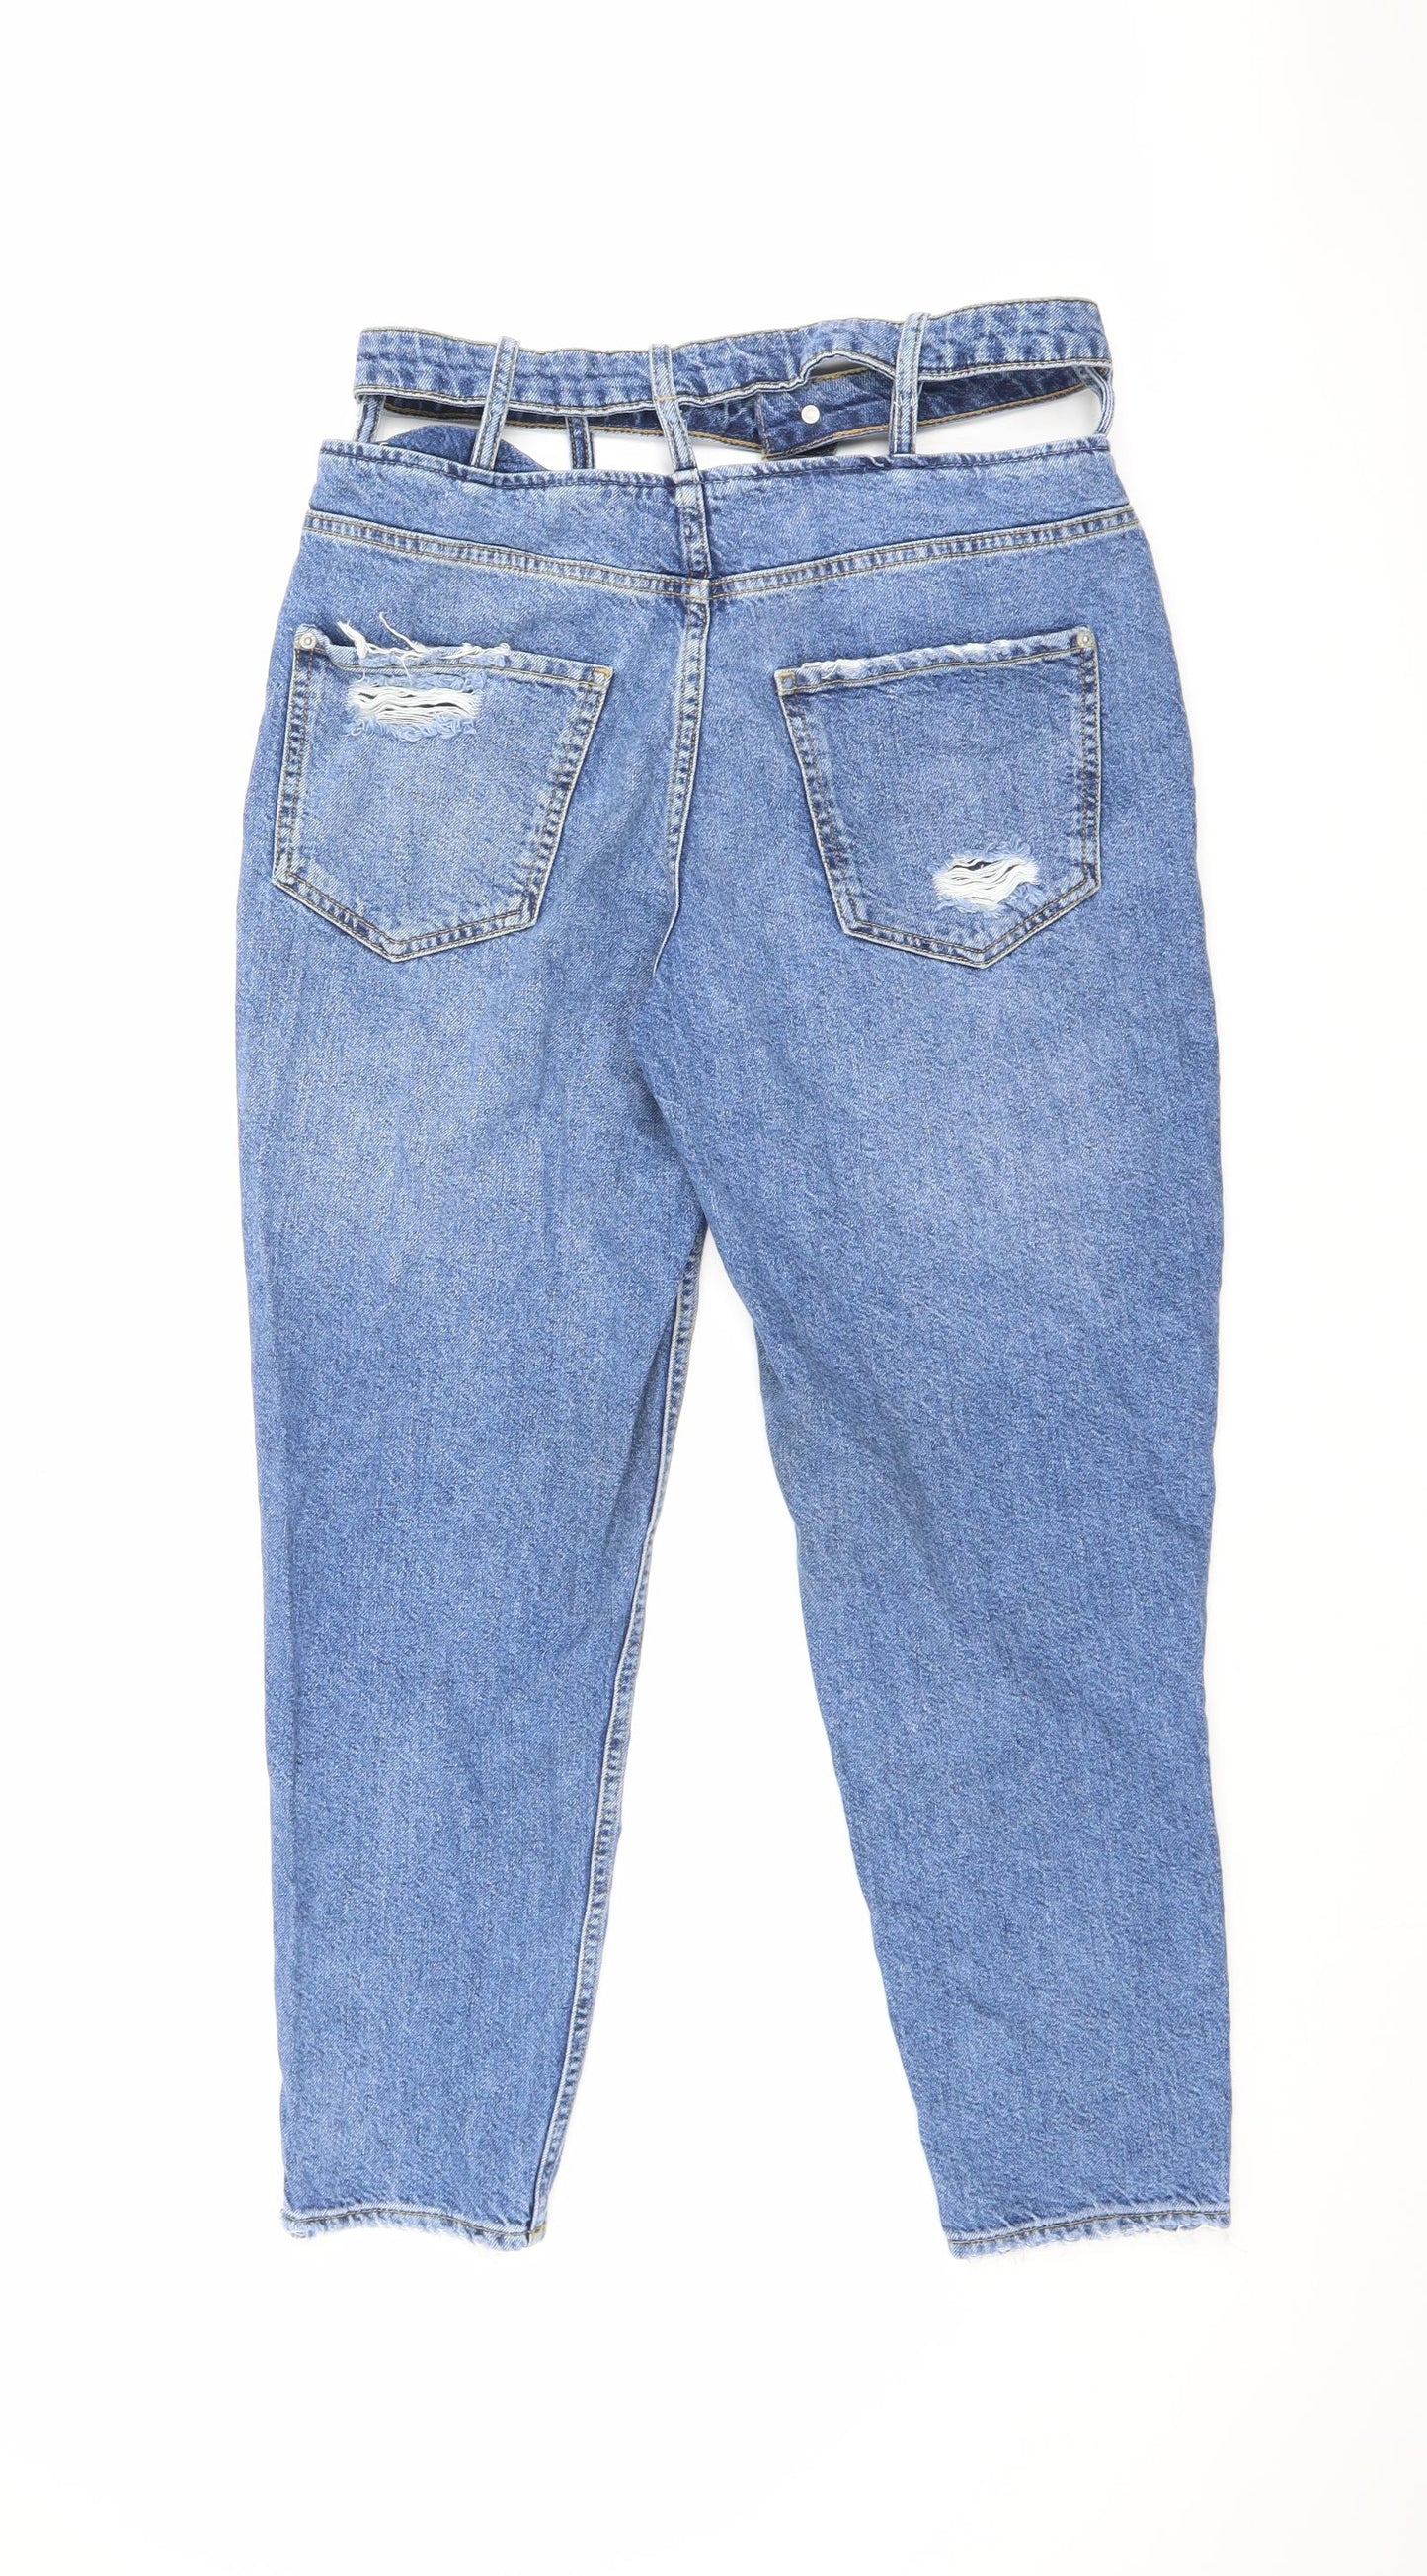 Bershka Womens Blue Cotton Boyfriend Jeans Size 10 L26 in Regular Zip - Cut Out Detail